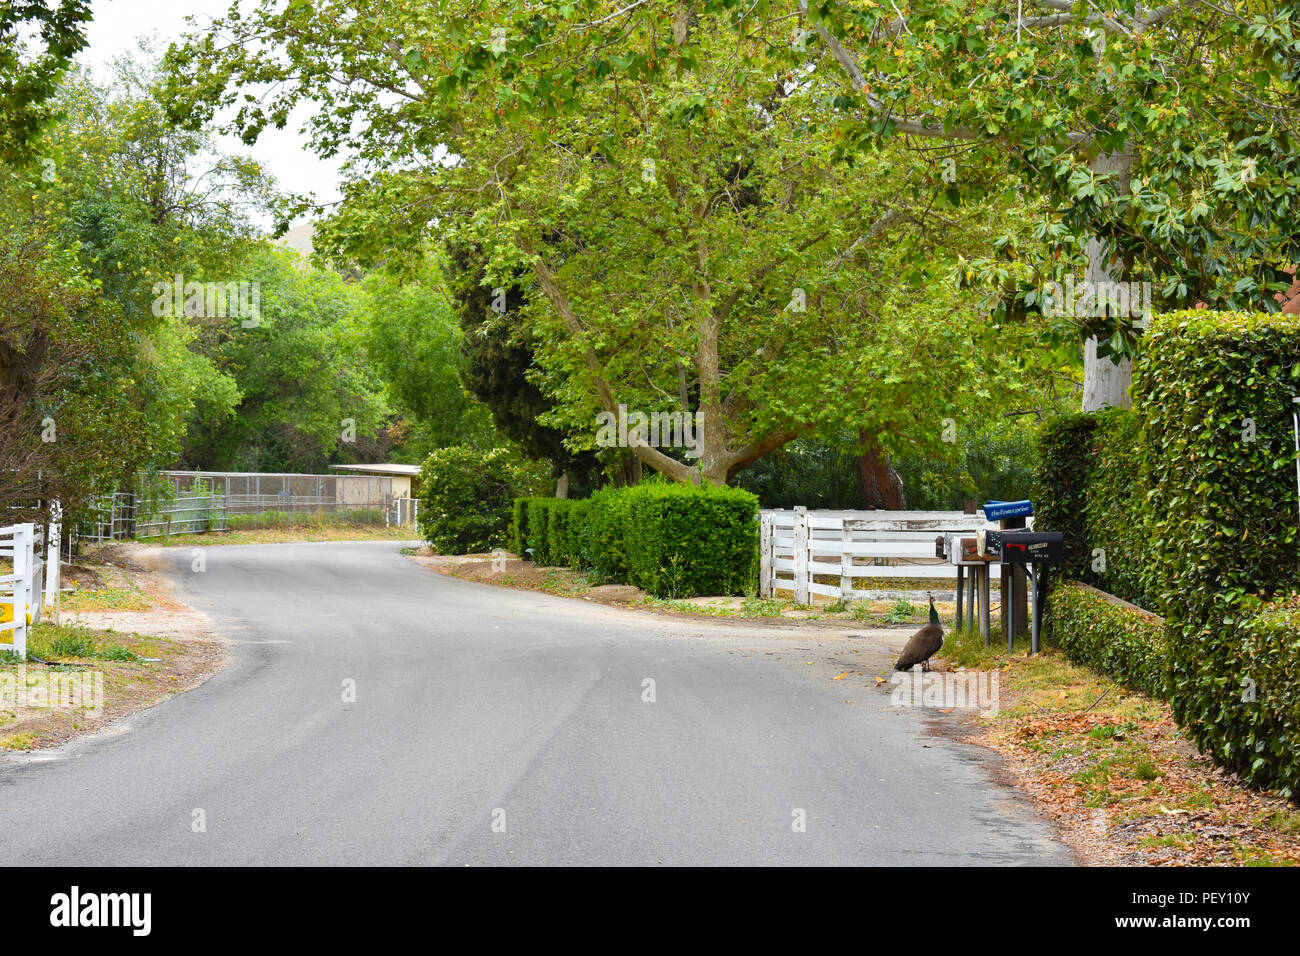 Simi Valley, CA. - Una tranquilla comunità isolata ai piedi delle colline di Simi Valley, CA. con un pavone lungo la strada tortuosa. Foto Stock